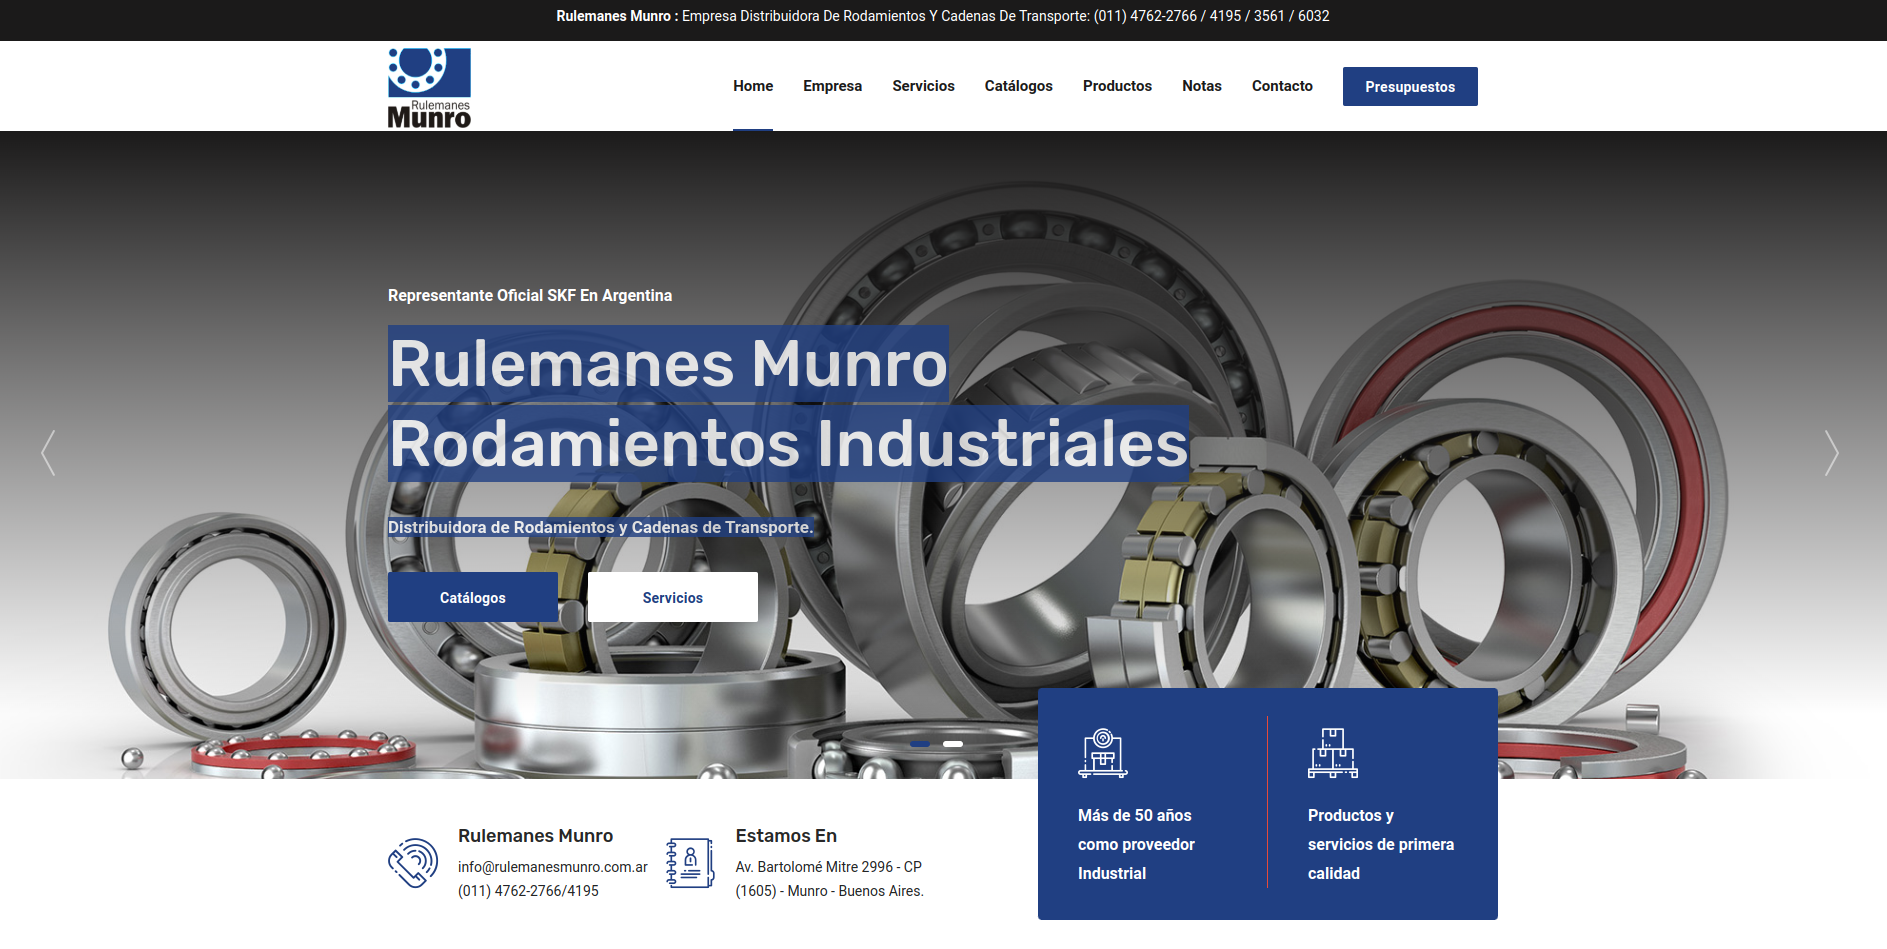 Desarrollo de sitio web para la empresa Rulemanes Munro